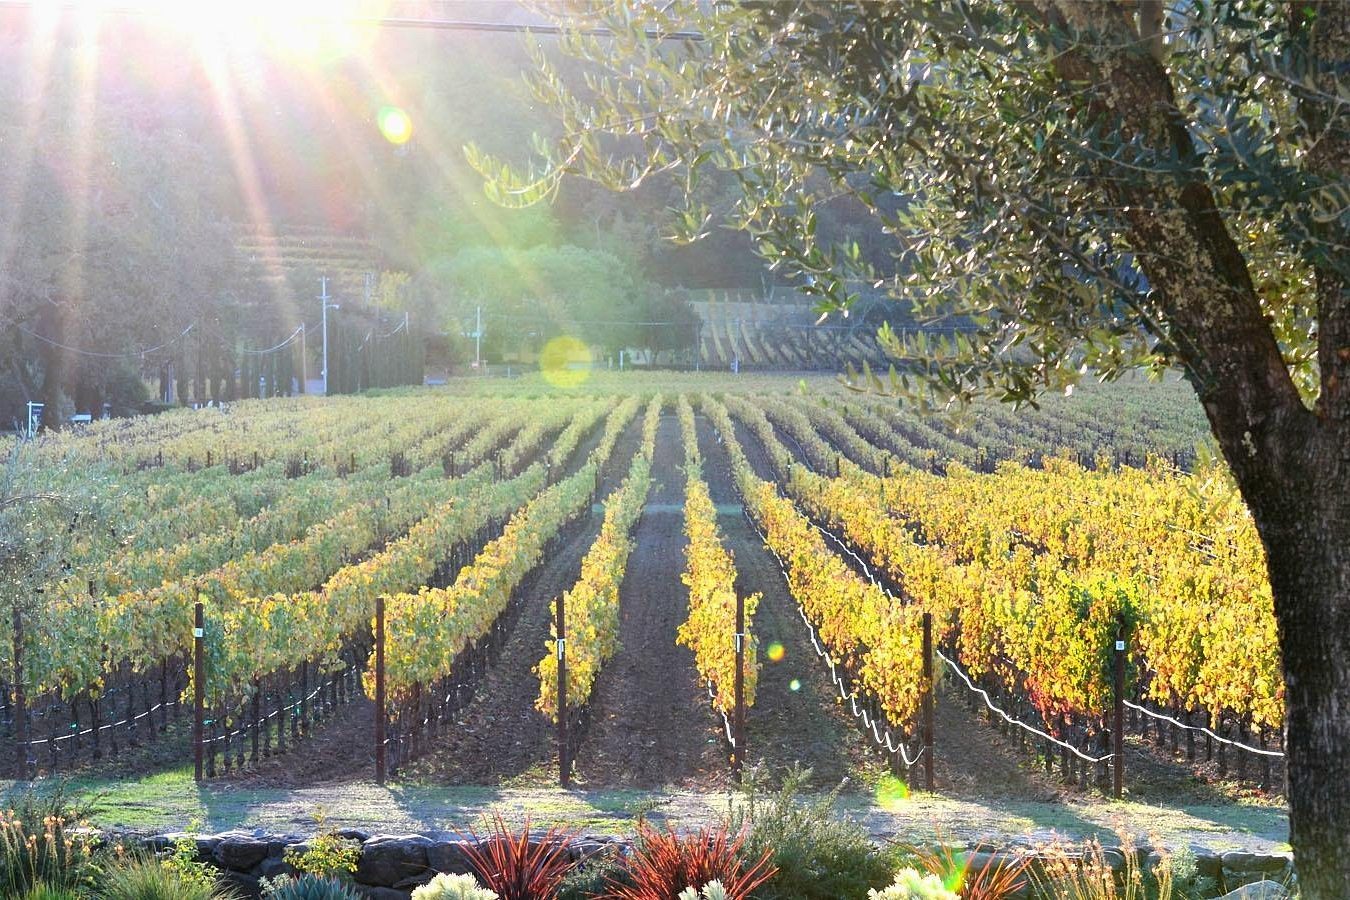 Les 12 meilleurs vignobles de Napa Valley à visiter maintenant 